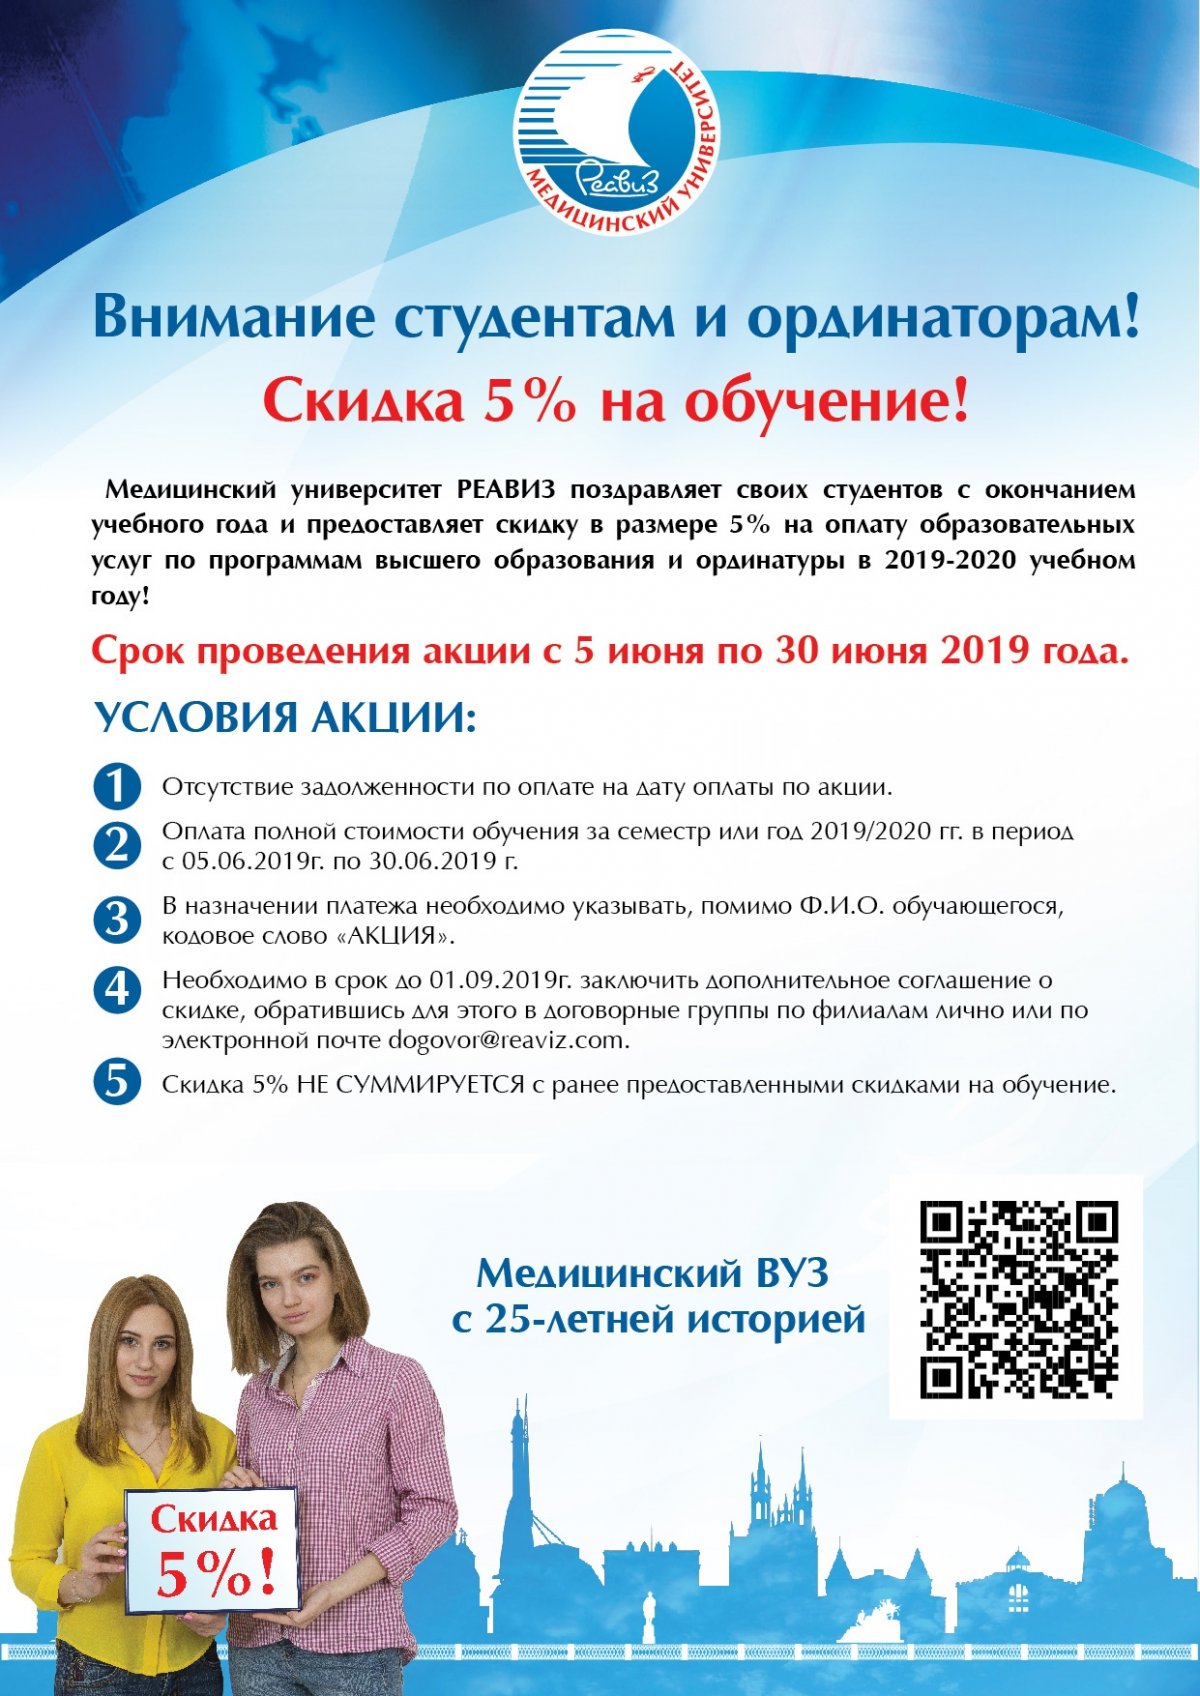 ВНИМАНИЕ! Новость от 21-06-2019